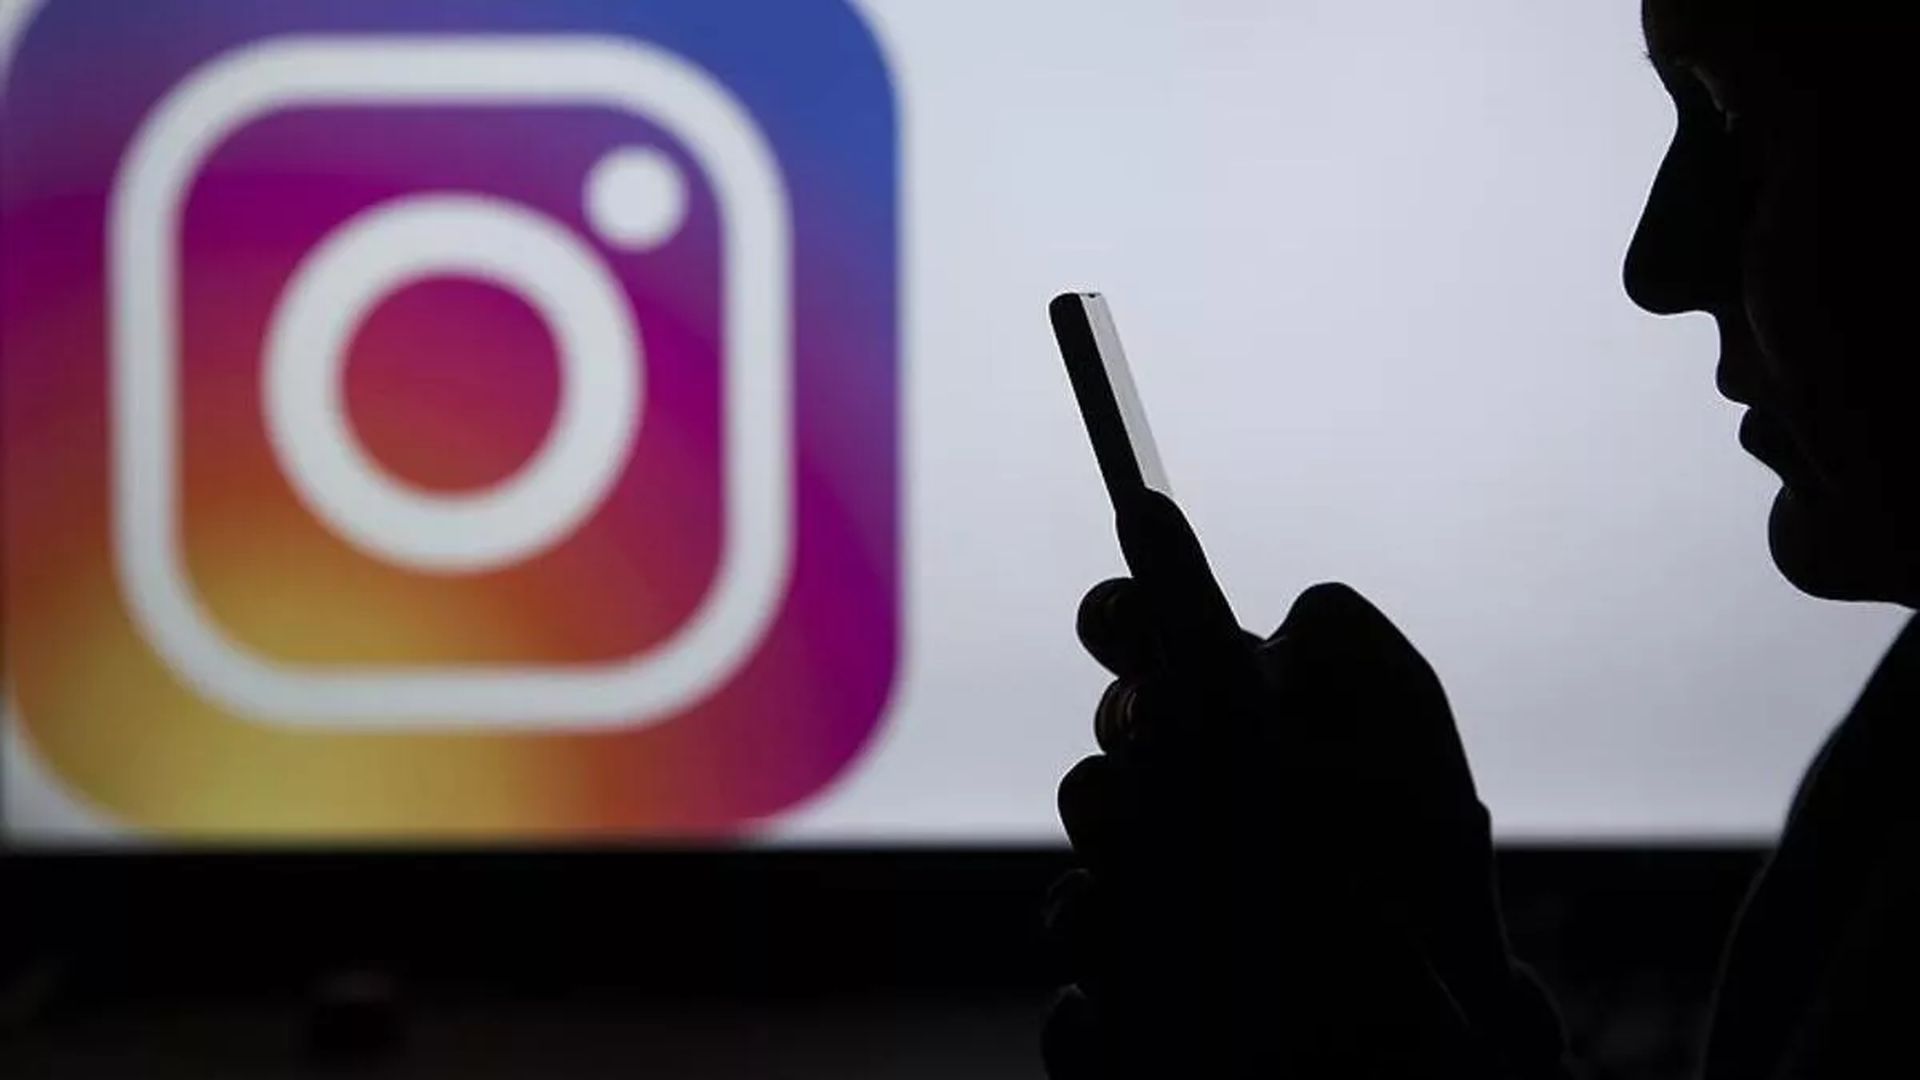 Neste artigo, abordaremos o recurso Notas do Instagram, além de tentar responder à pergunta: "O que são notas do Instagram?"